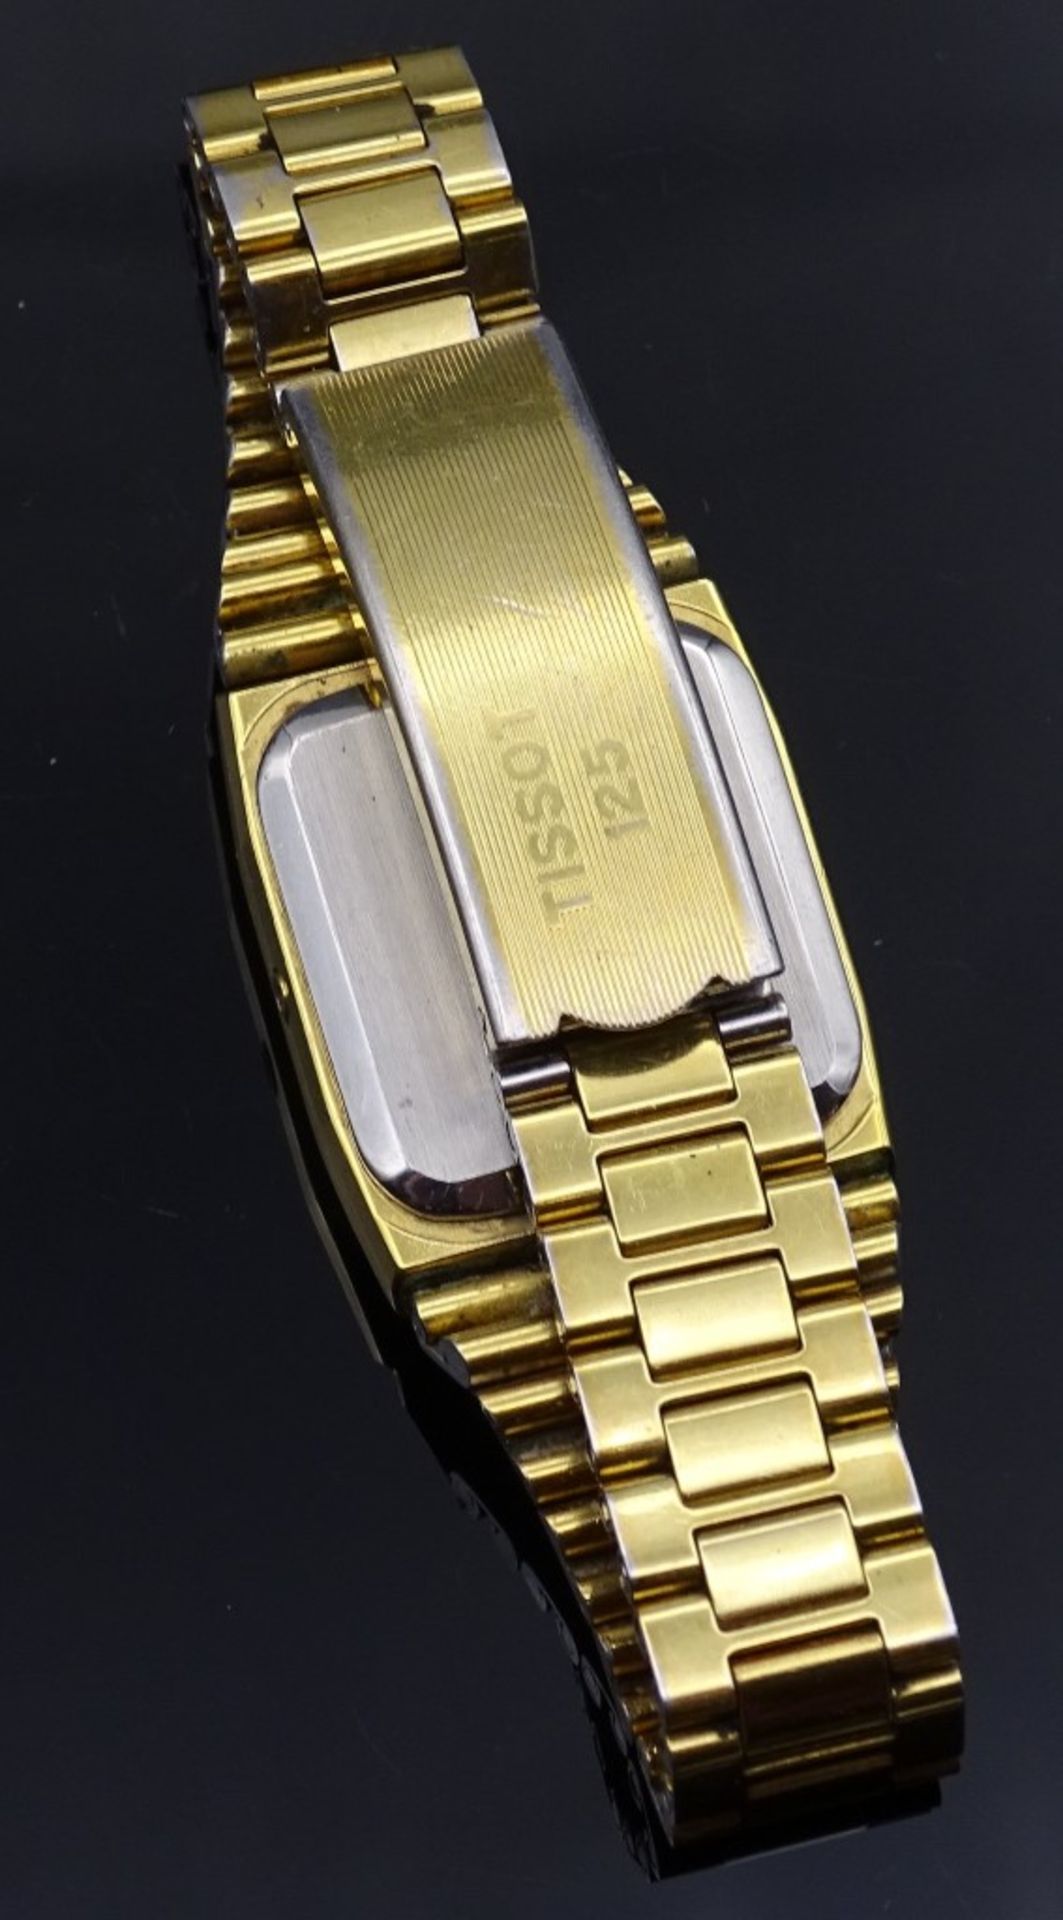 Armbanduhr "Tissot 125",Quartz,vergoldet,Gehäuse 22x22mm,Funktion nicht geprü - Bild 3 aus 4